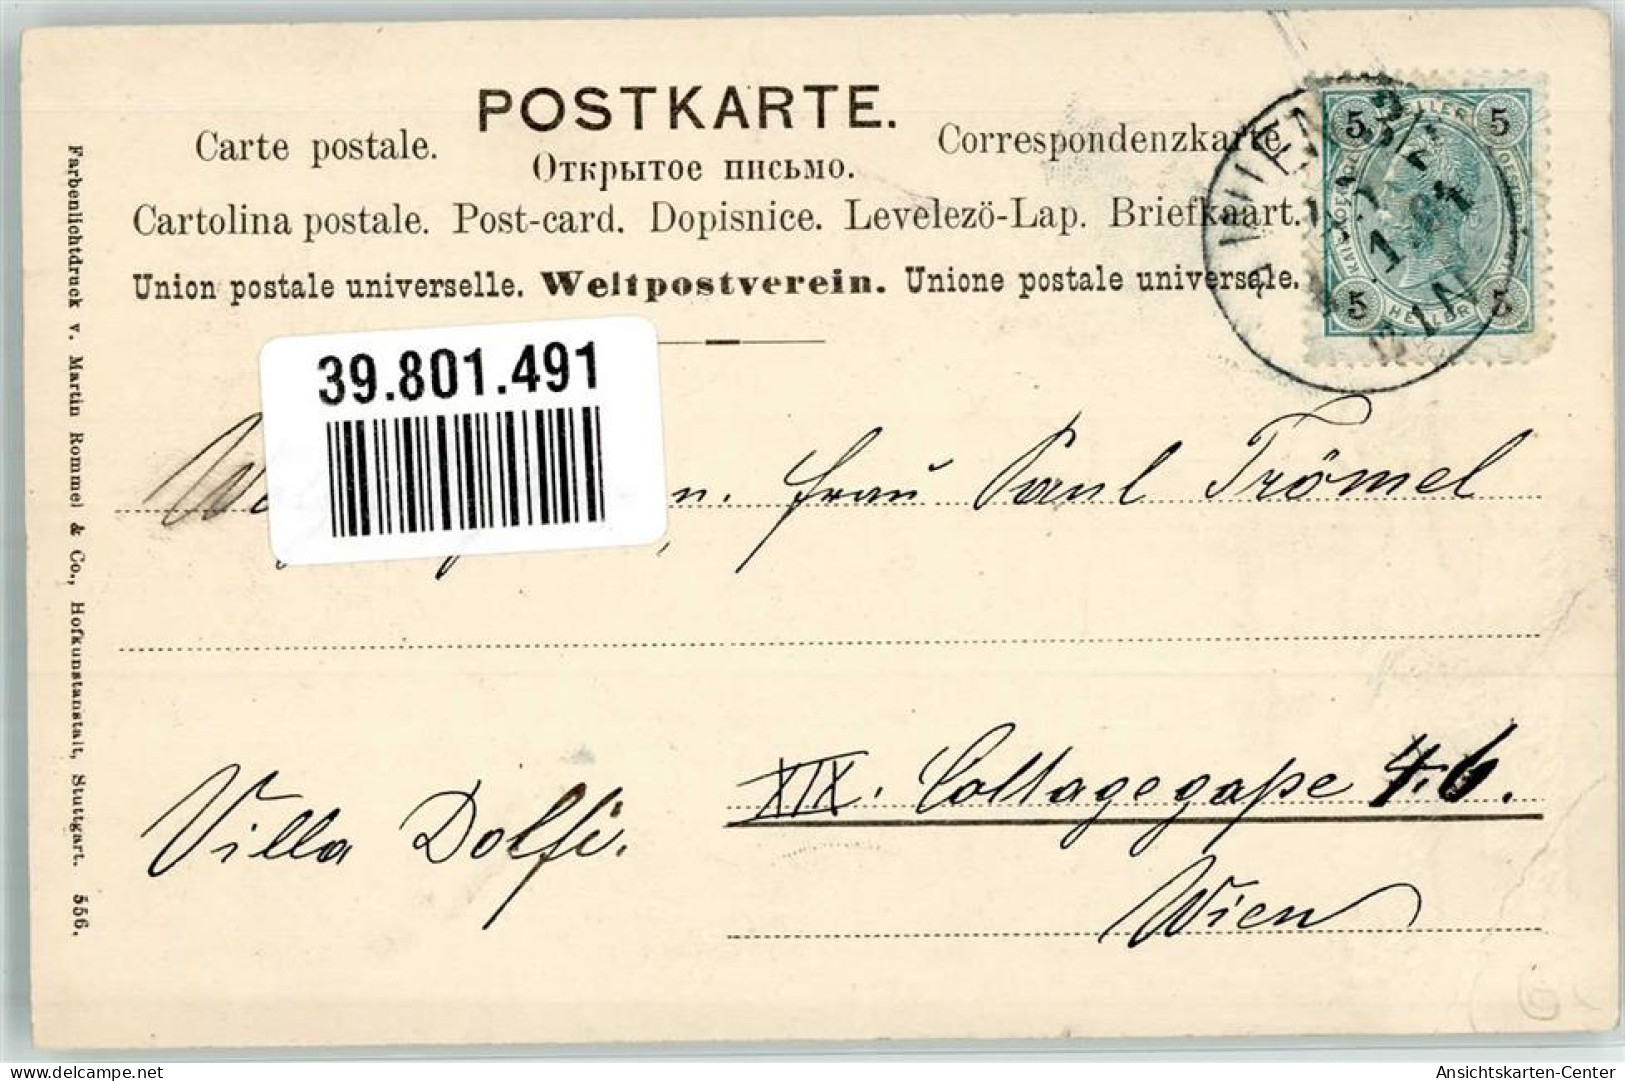 39801491 - Kleeblaetter Hummeln Verlag Rommel Nr.556 - New Year